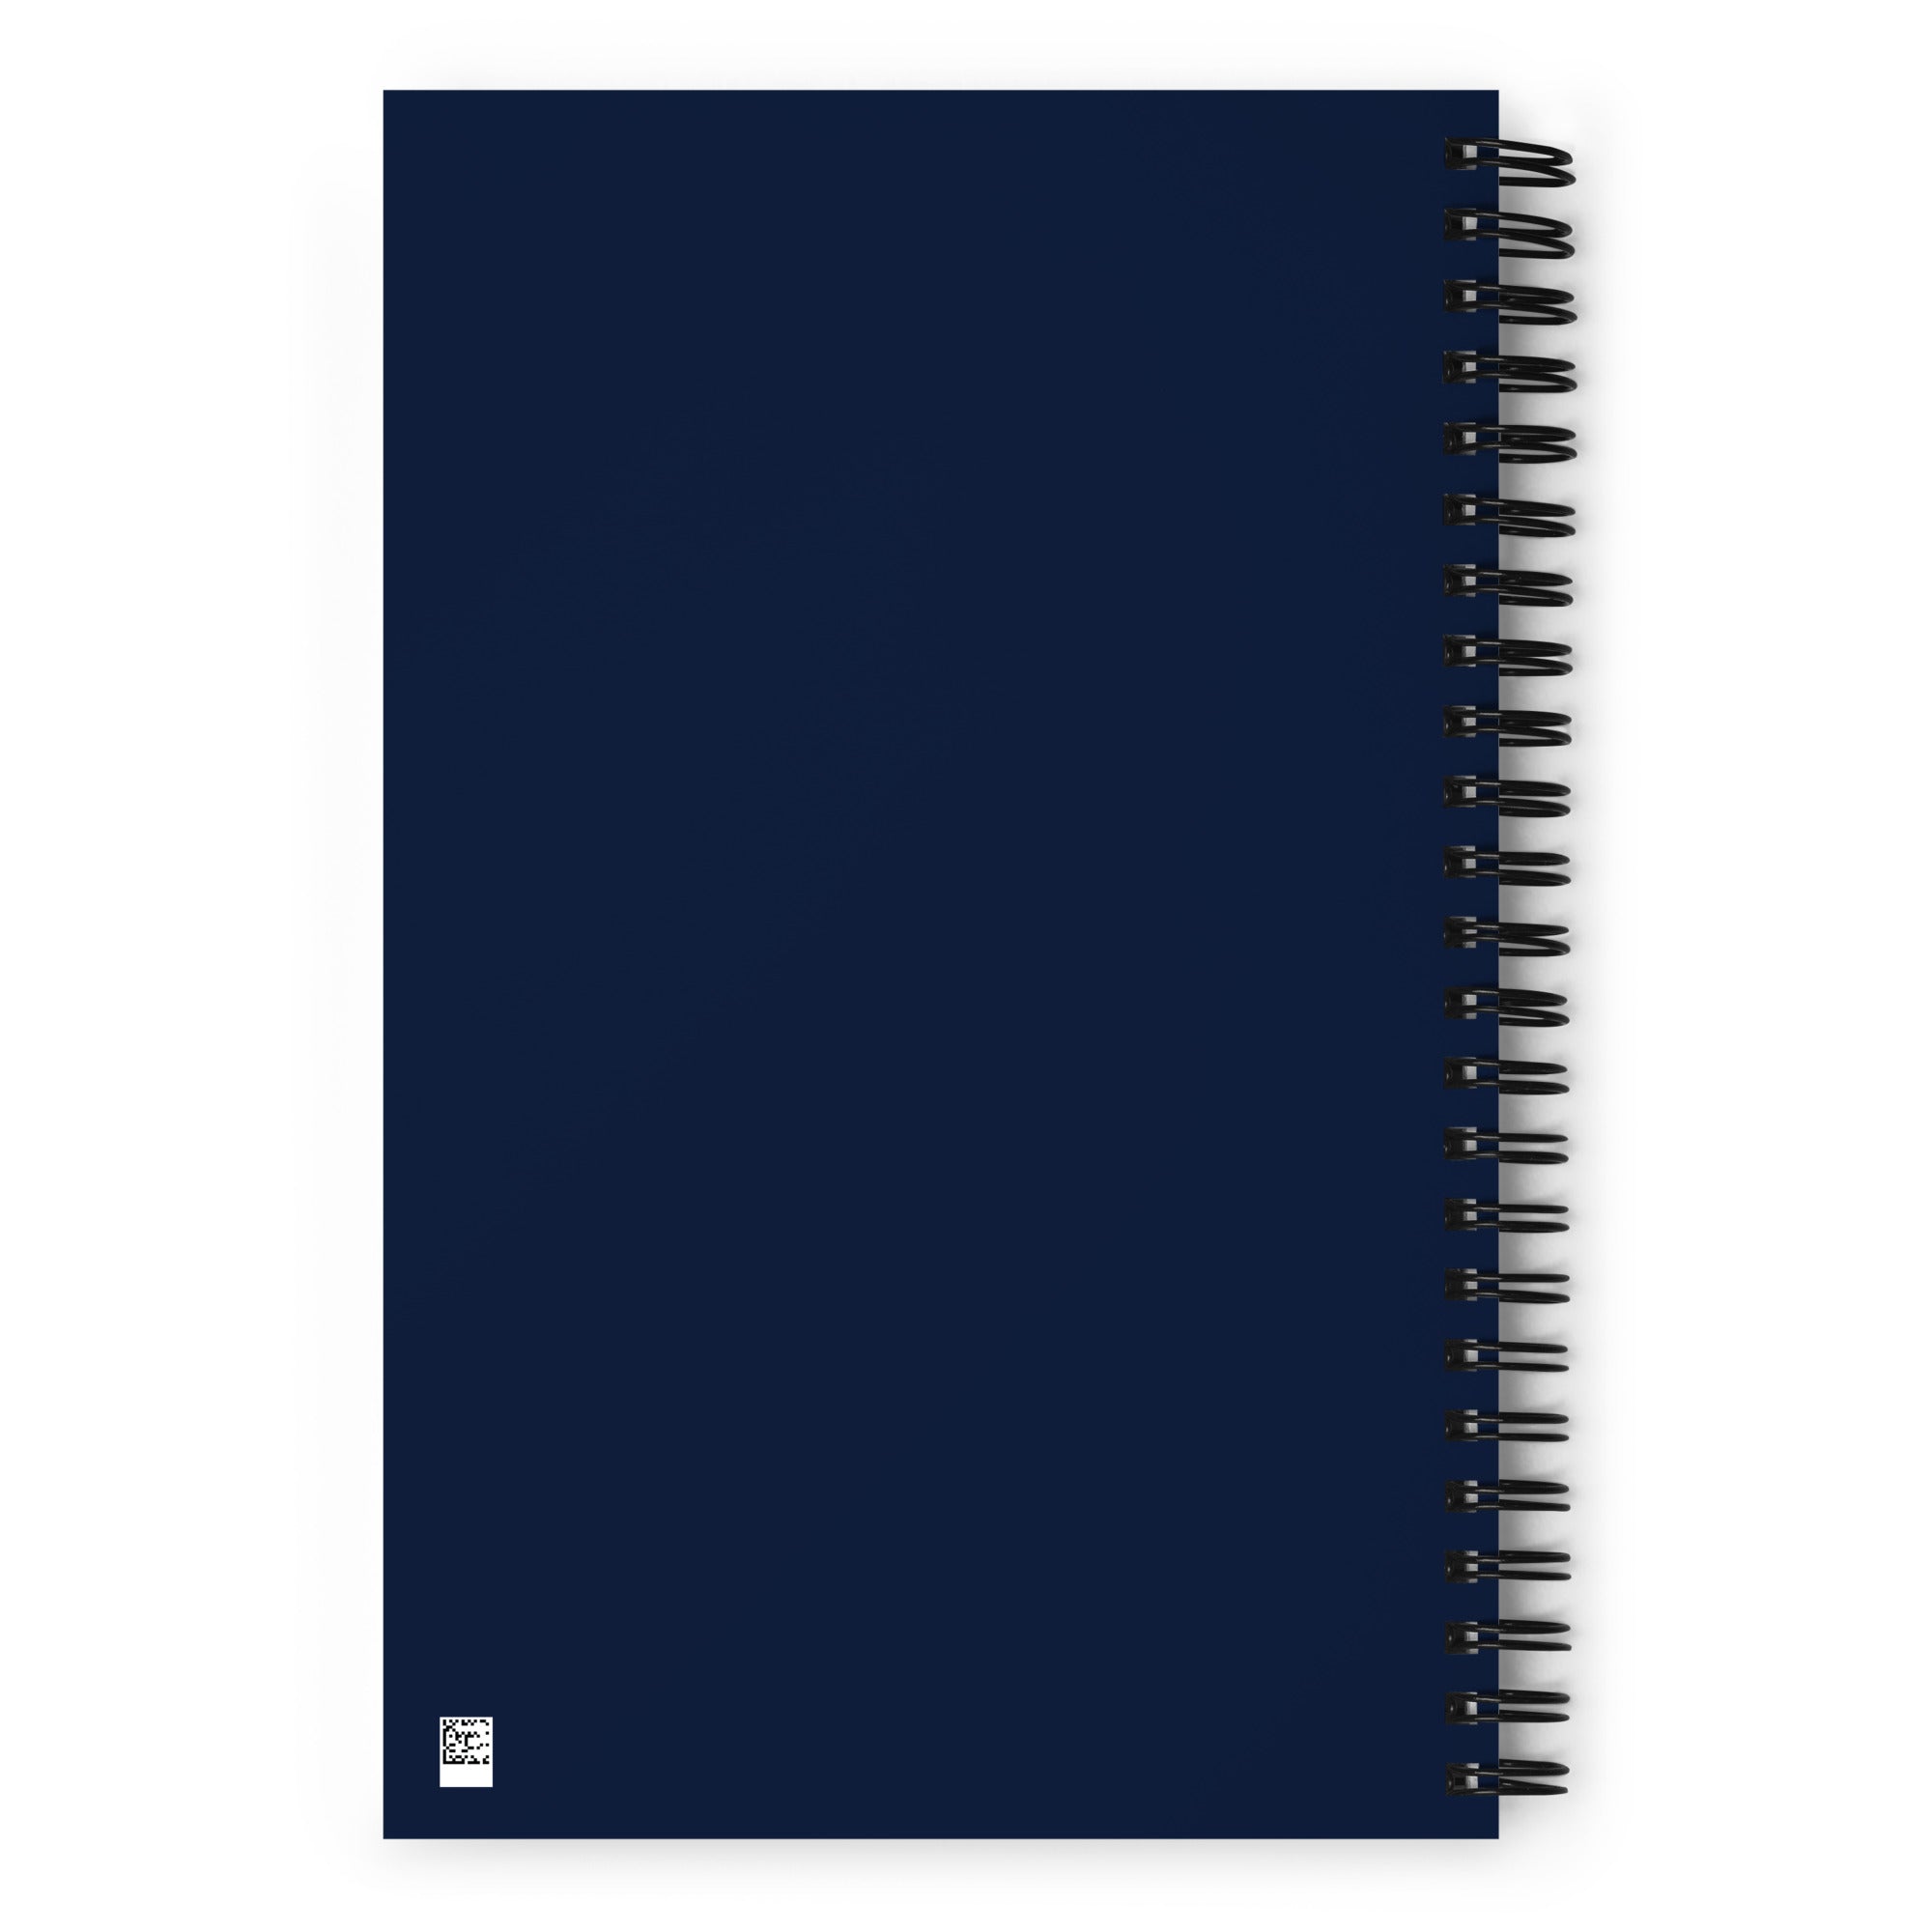 MLKHS piral notebook